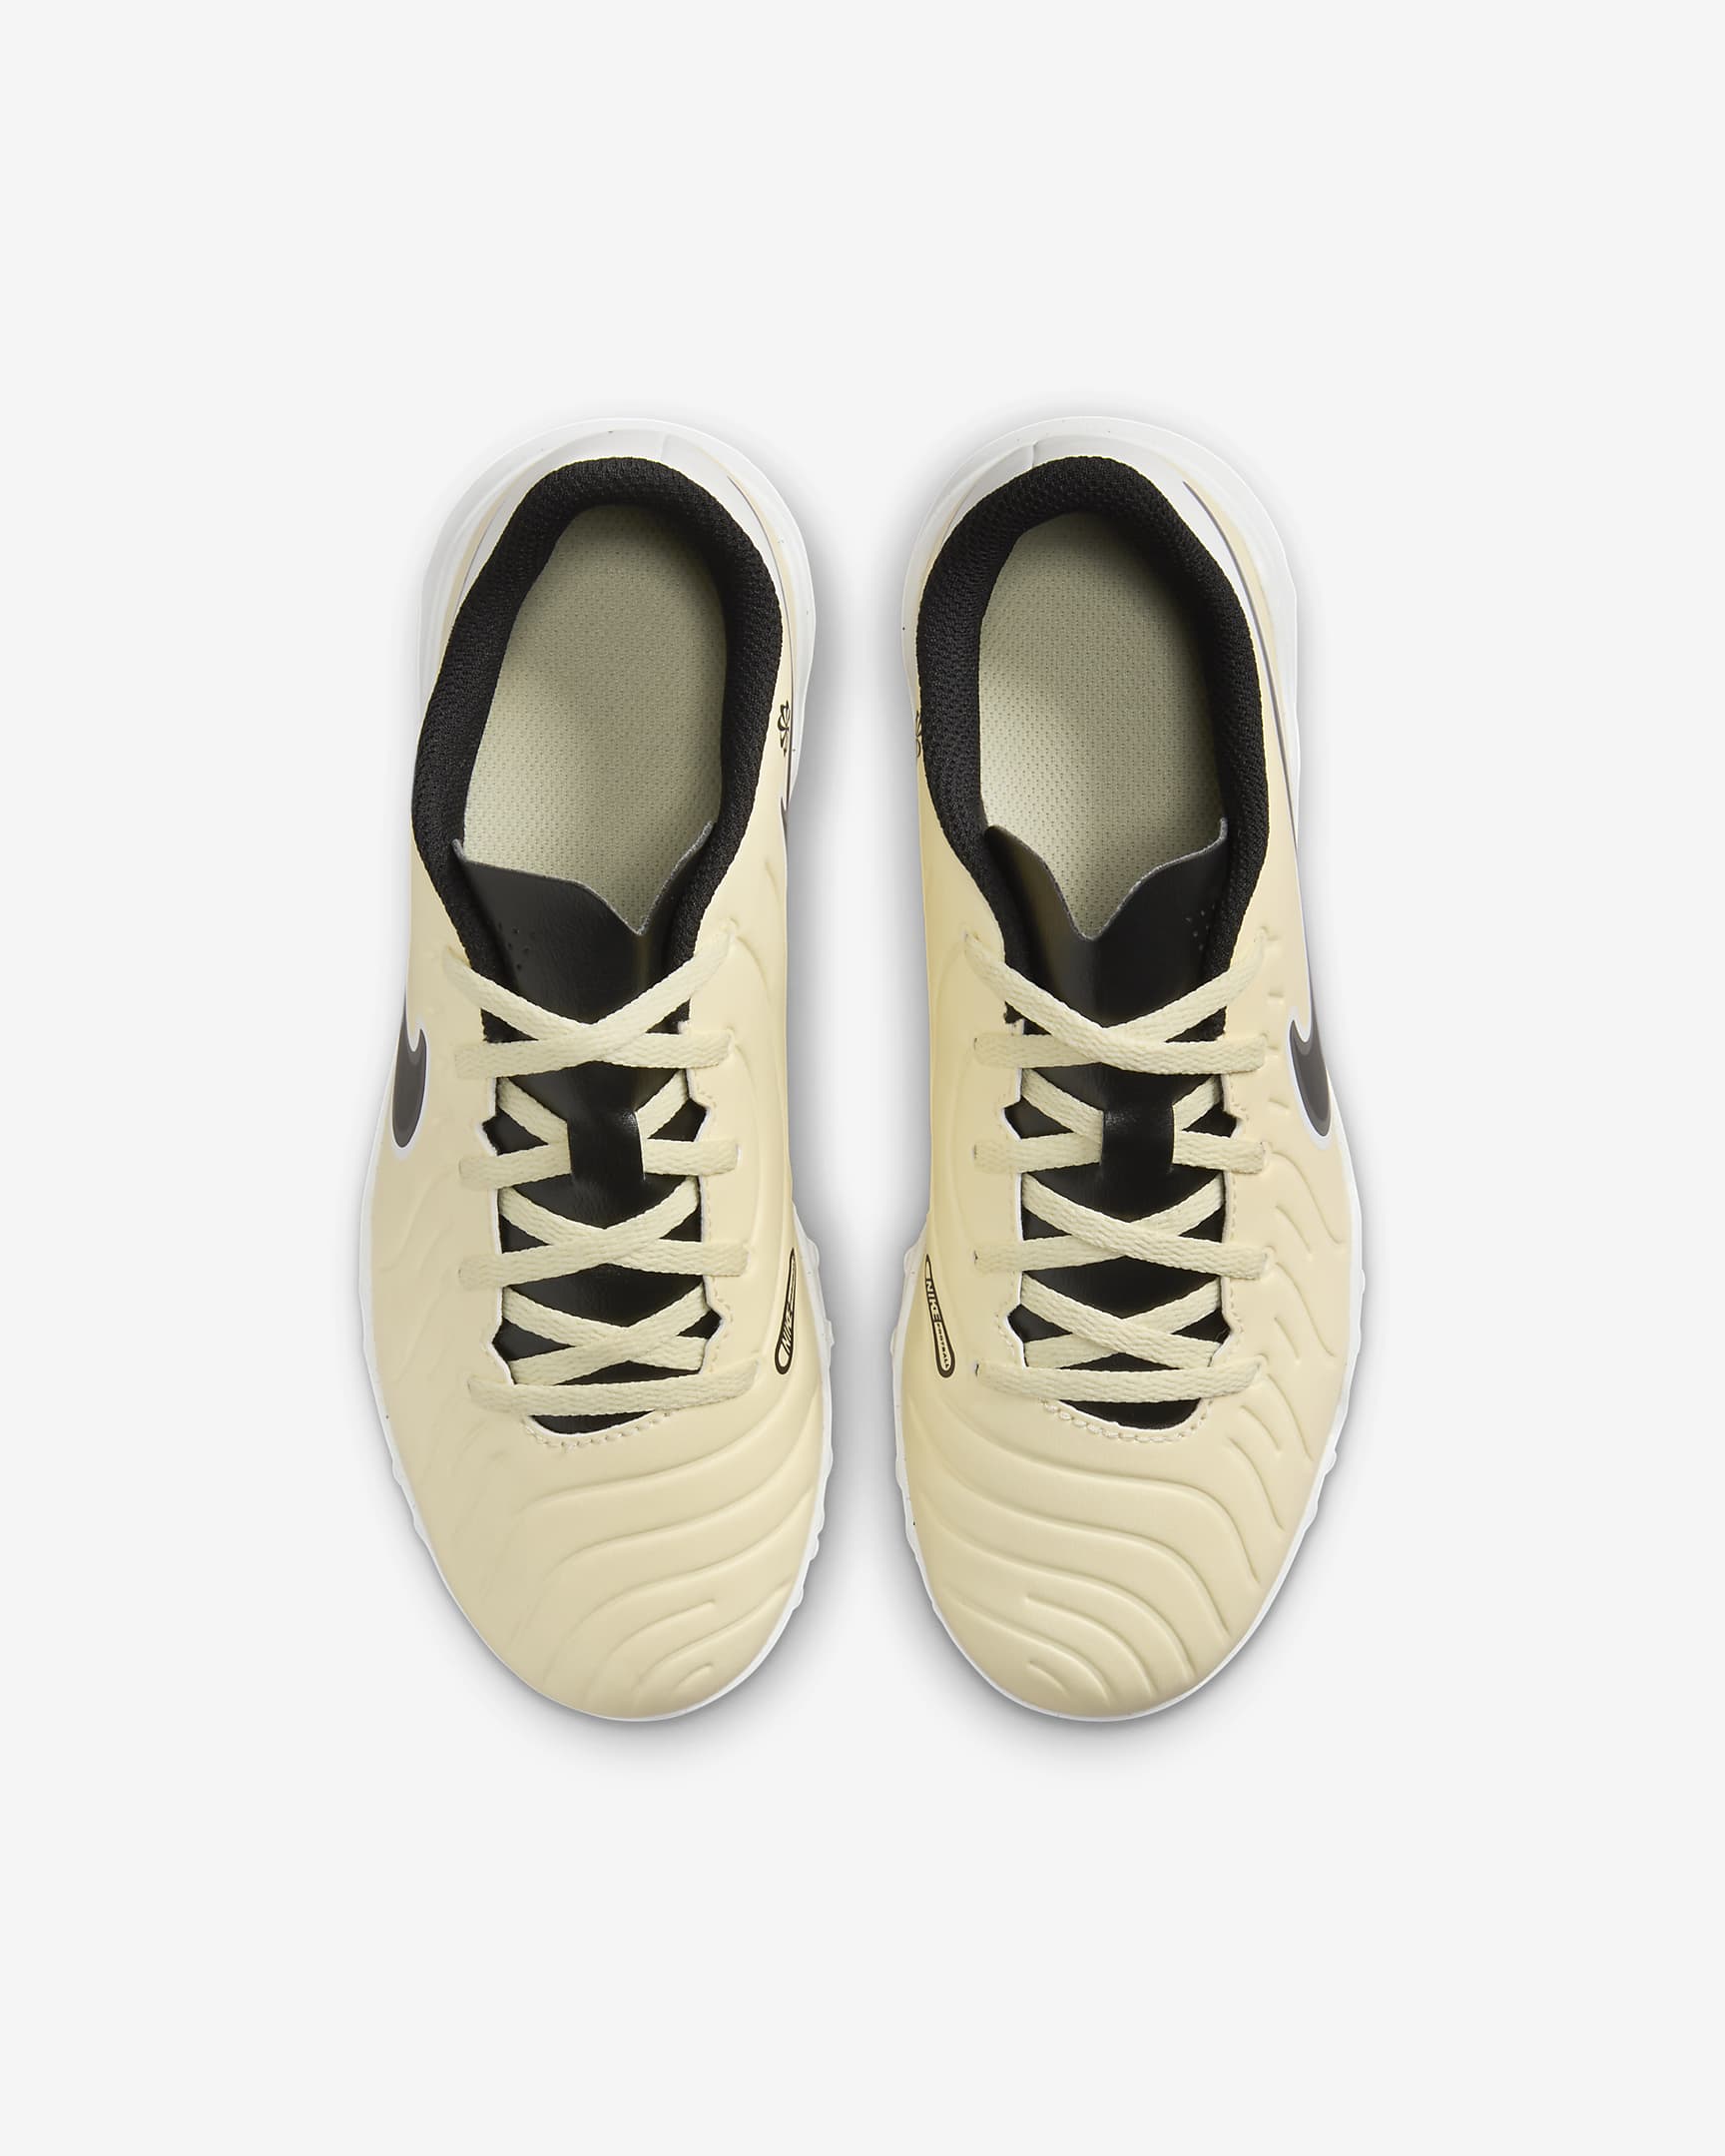 Chaussure de foot basse pour surface synthétique Nike Jr. Tiempo Legend 10 Club pour enfant/ado - Lemonade/Metallic Gold Coin/Noir